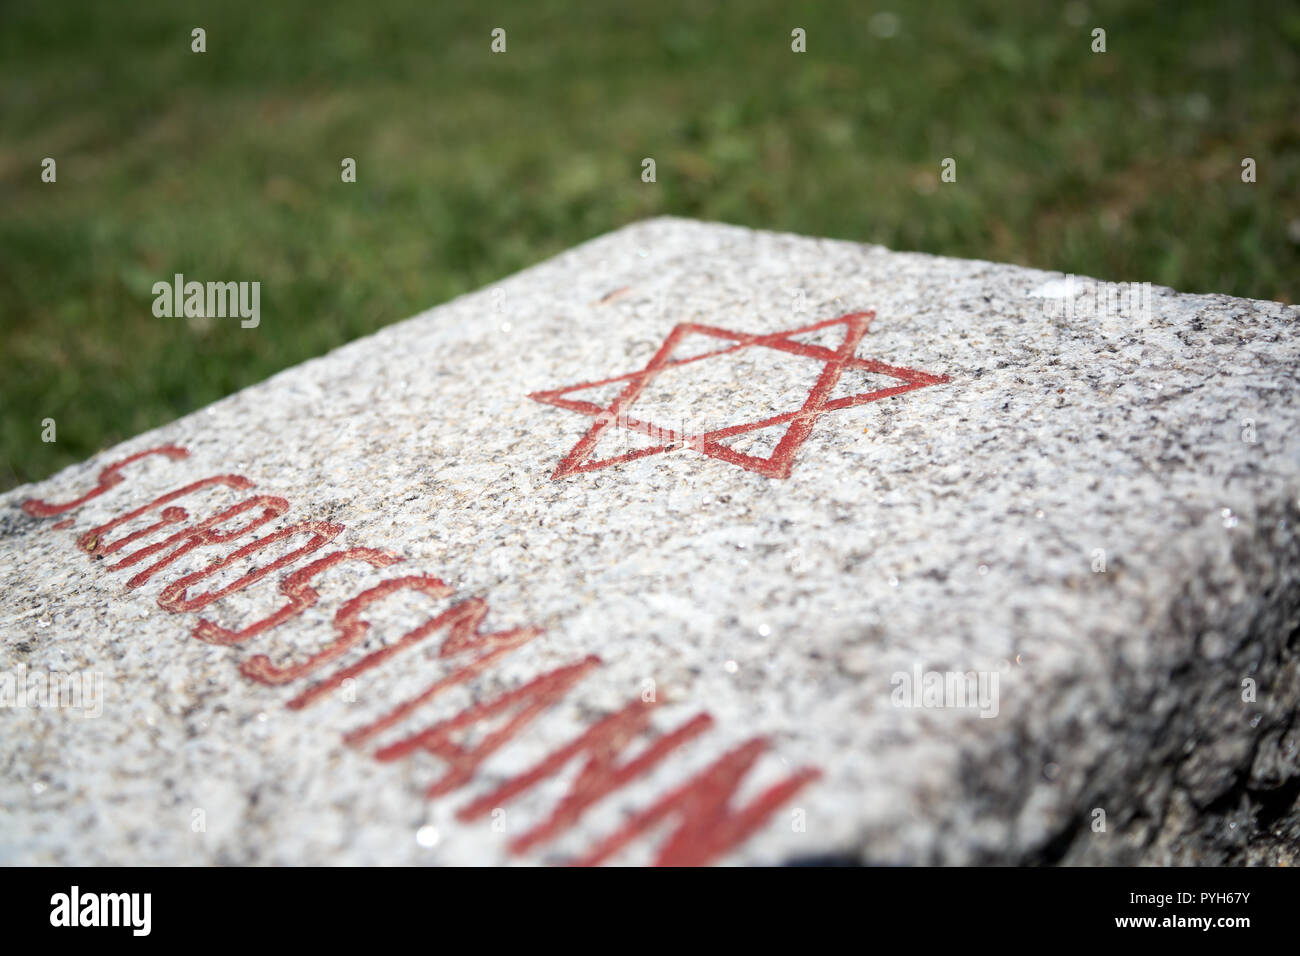 Bayern, Deutschland - Ehrenamtliche Friedhof für 121 Opfer der nationalsozialistischen Gewaltherrschaft starb kurz nach der Befreiung 1945. Grabstein eines Juden Stockfoto